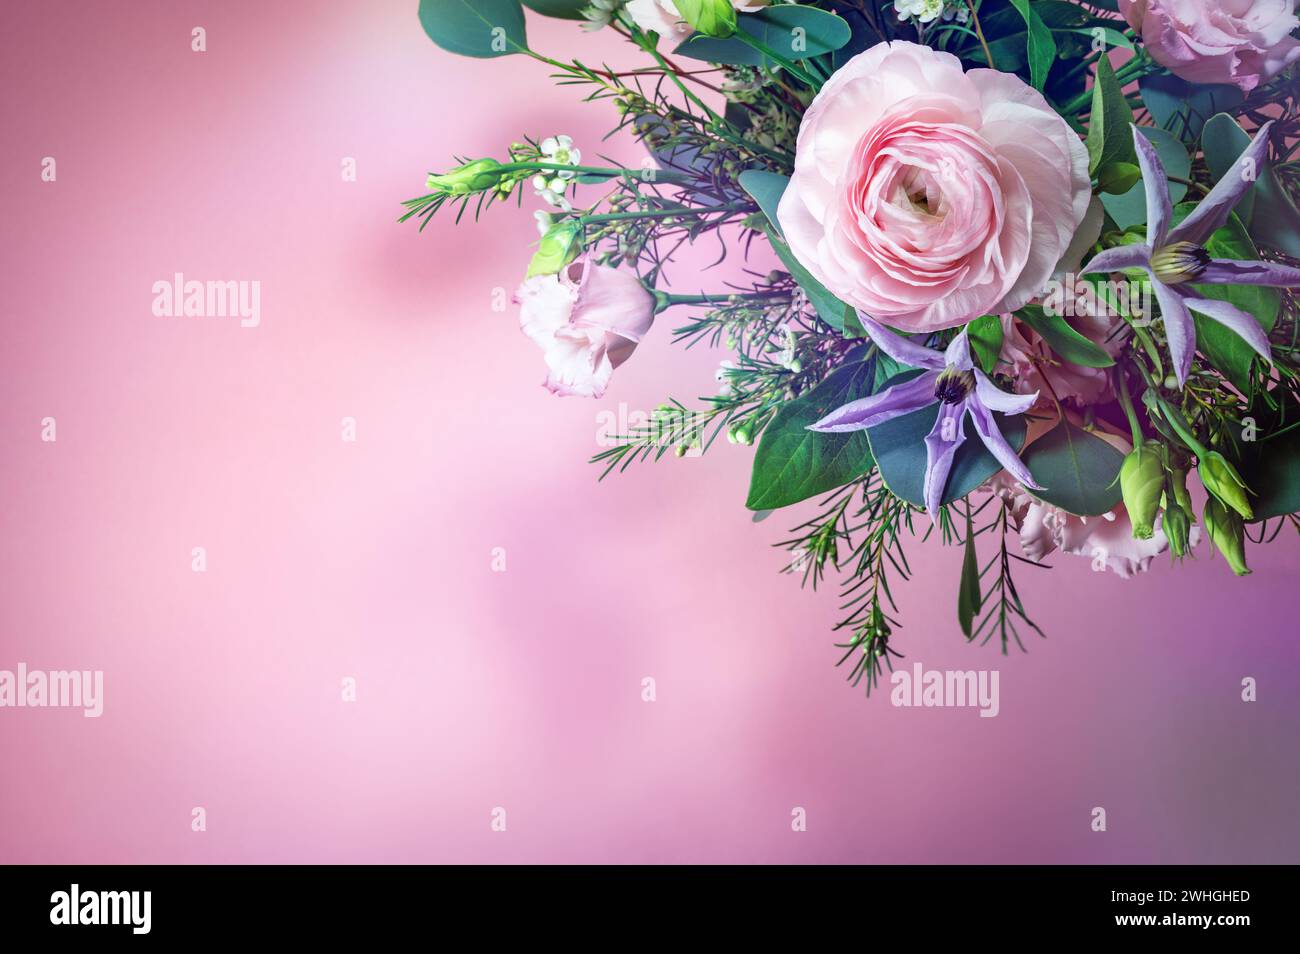 Blumenstrauß mit rosa und blauen Blumen in der Ecke eines rosafarbenen Hintergrunds, Grußkarte für Feiertage wie Valentinstag oder Muttertag Stockfoto